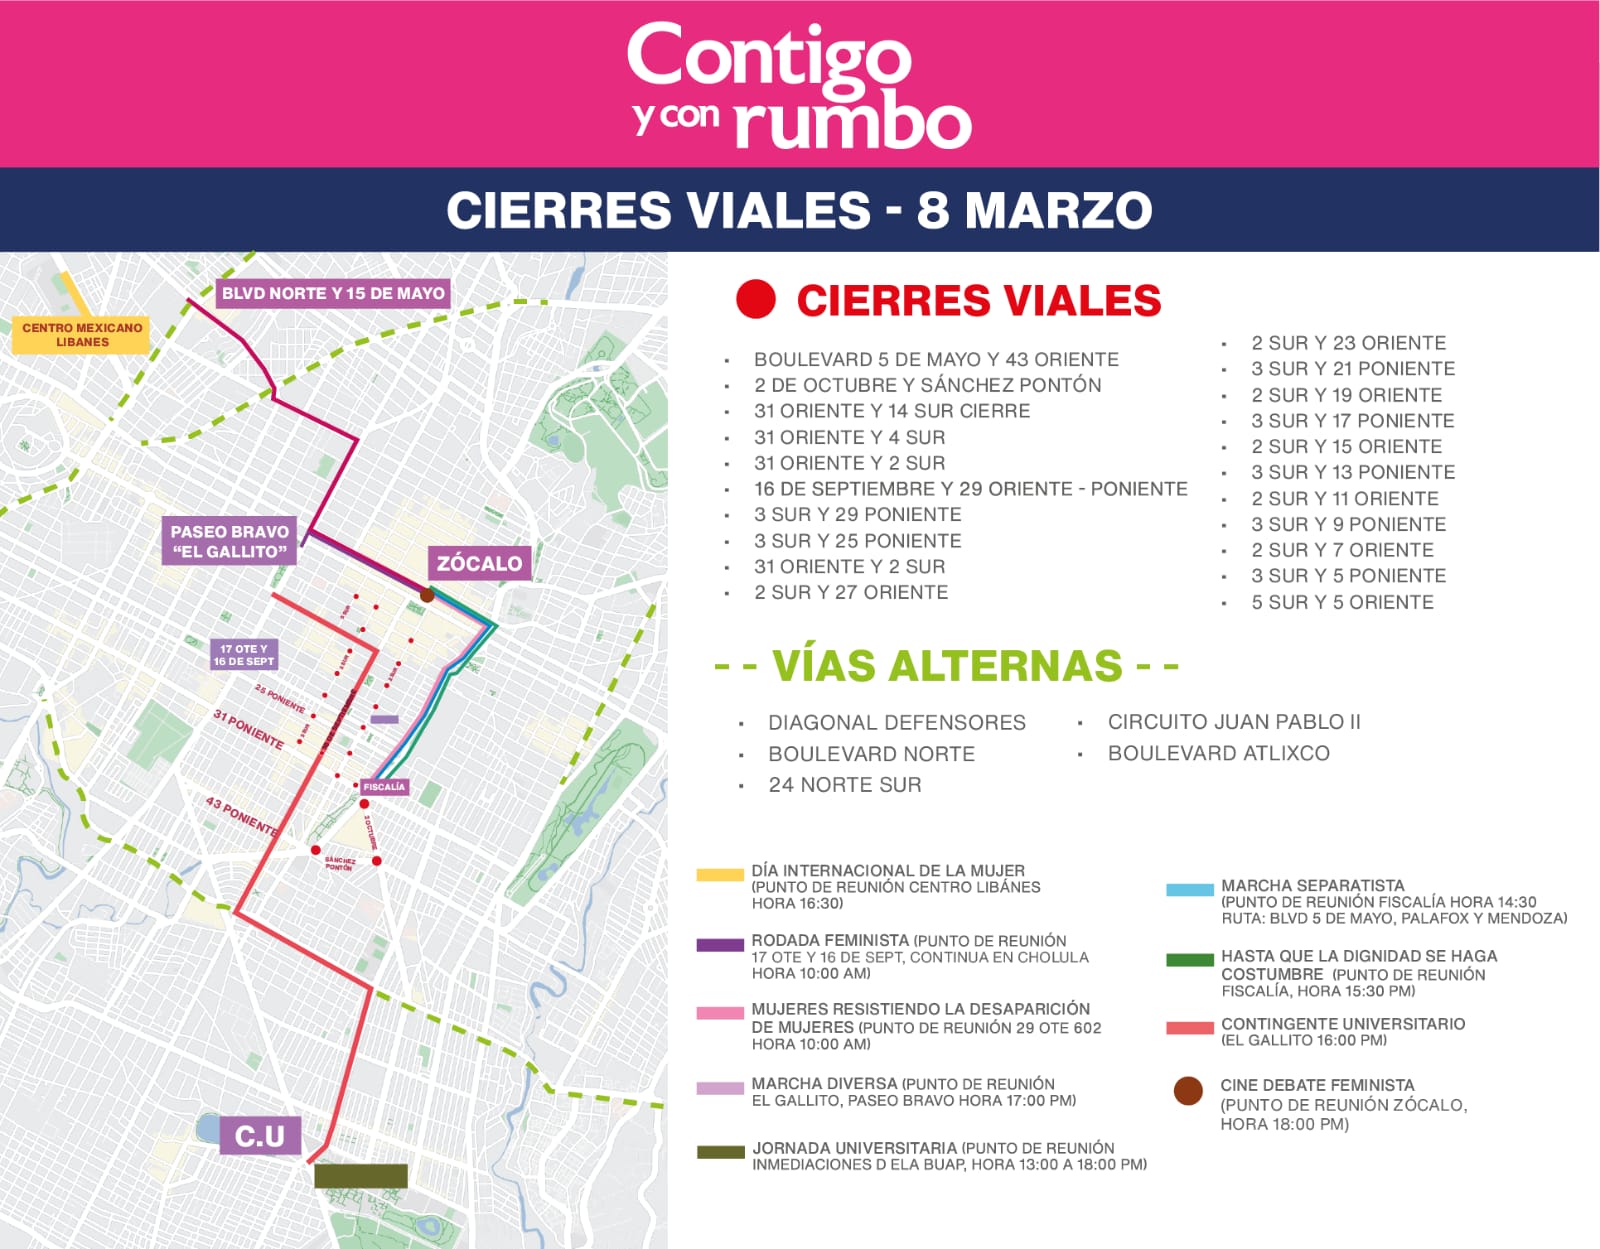 ¡TÓMALO EN CUENTA! hoy habrá muchos cierres de circulación por marchas del 8M